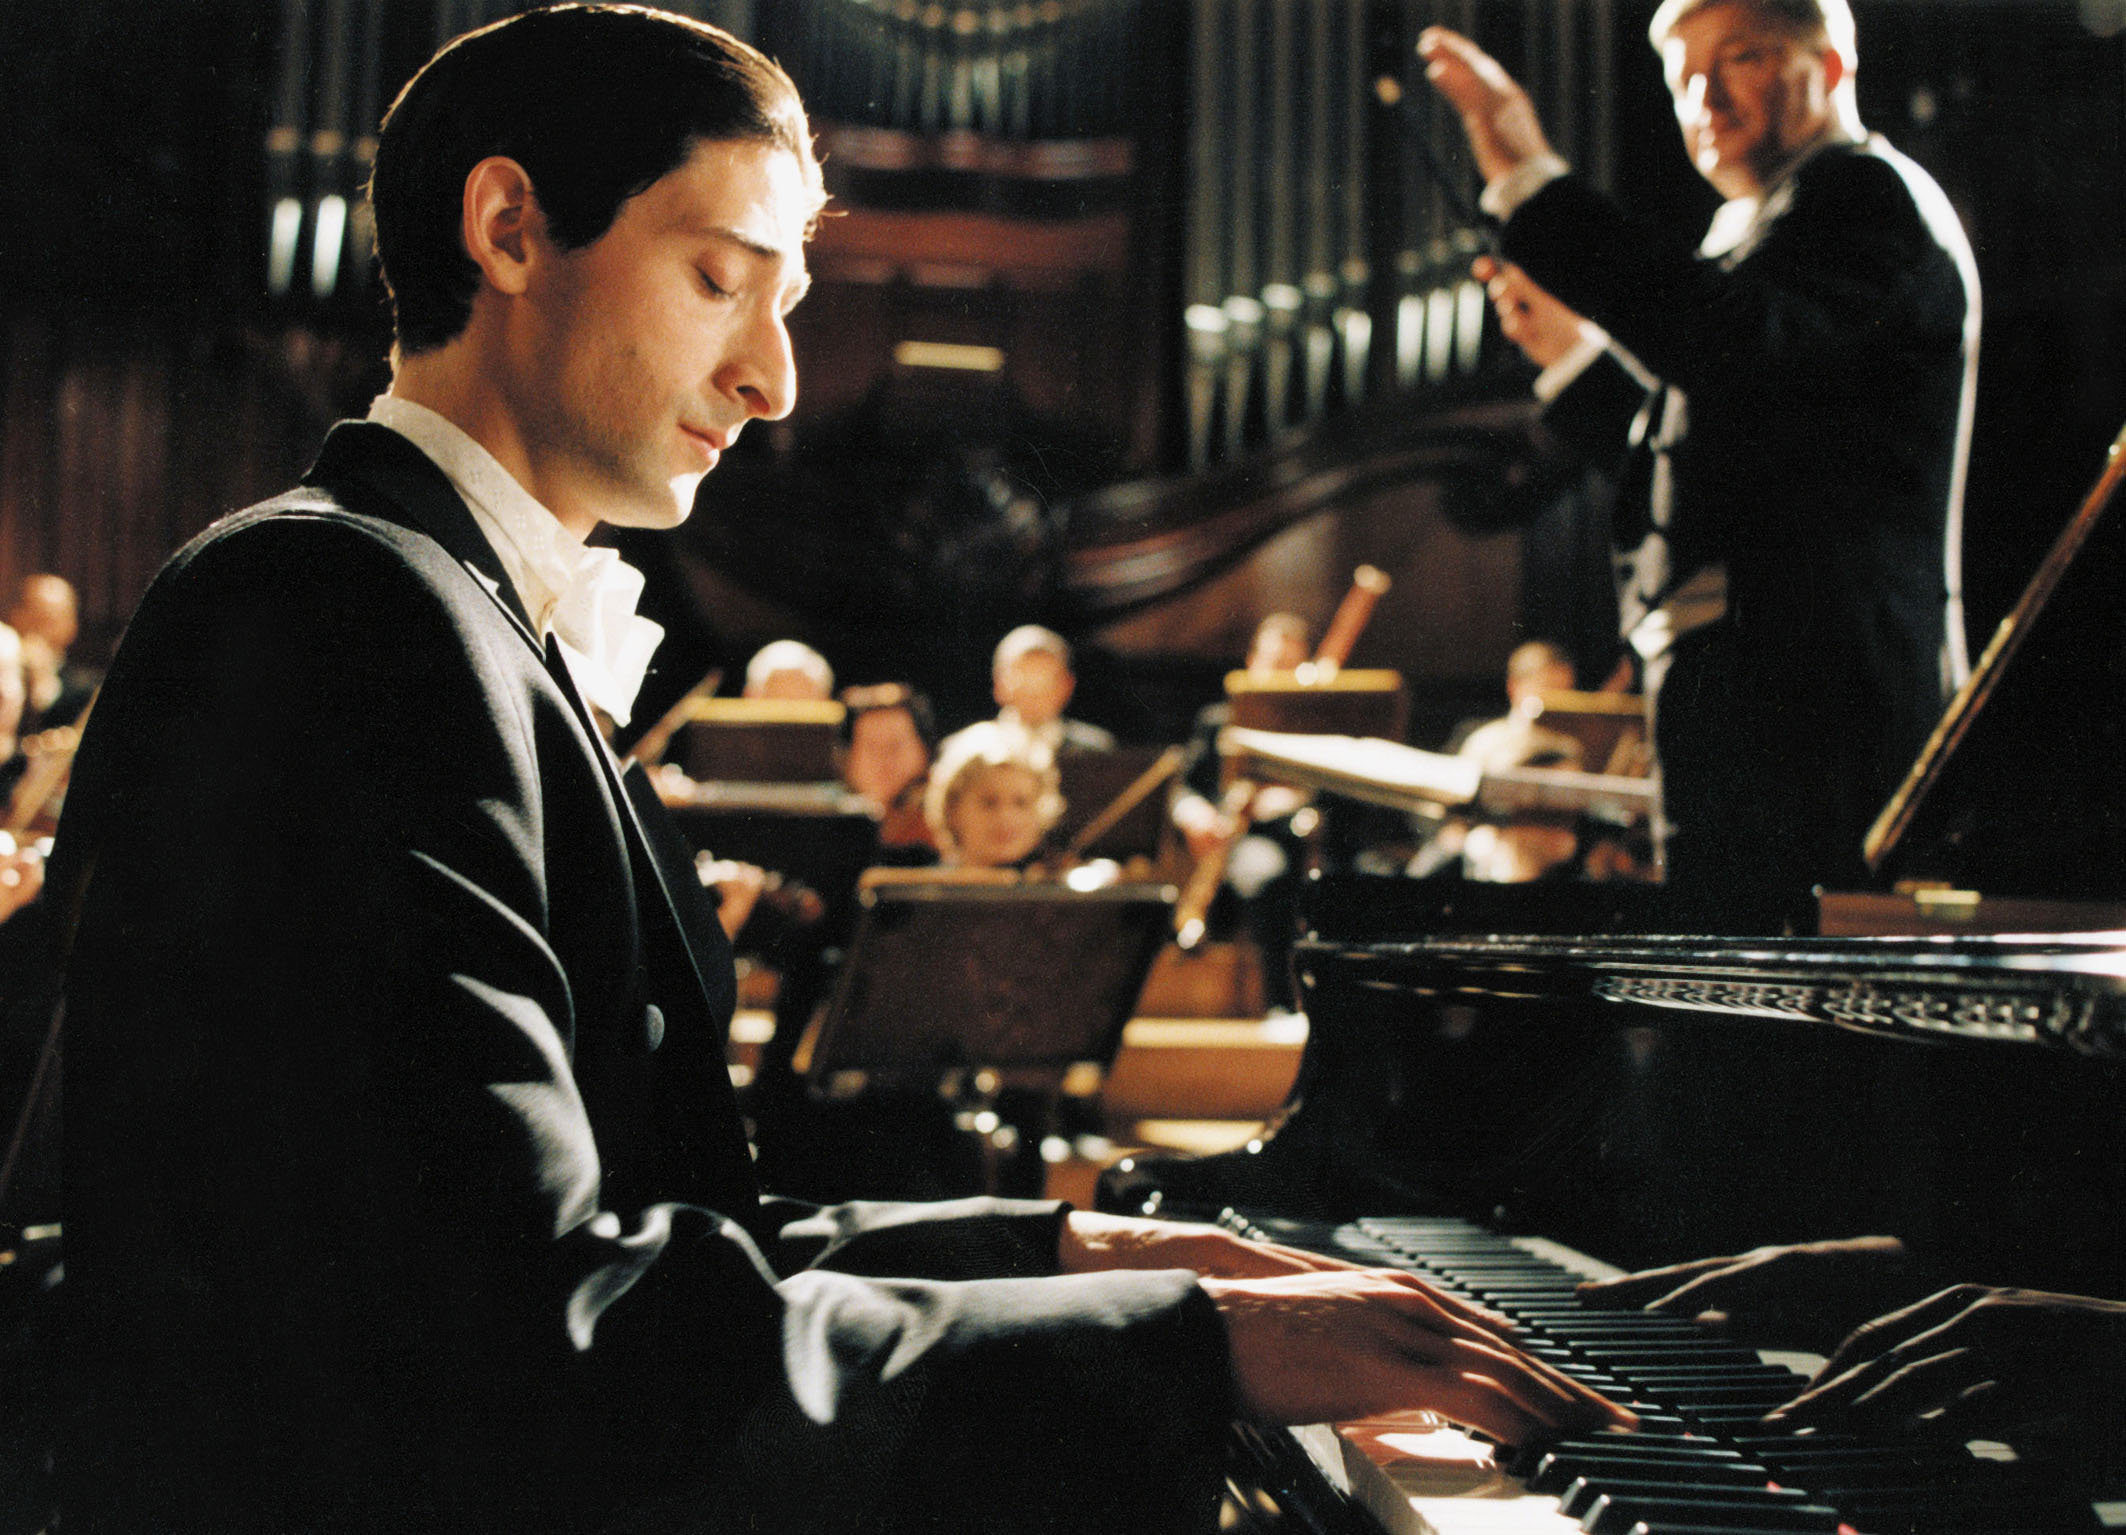 He can the piano. Пианист 2002 Эдриан Броуди. Пианист / the Pianist (2002).